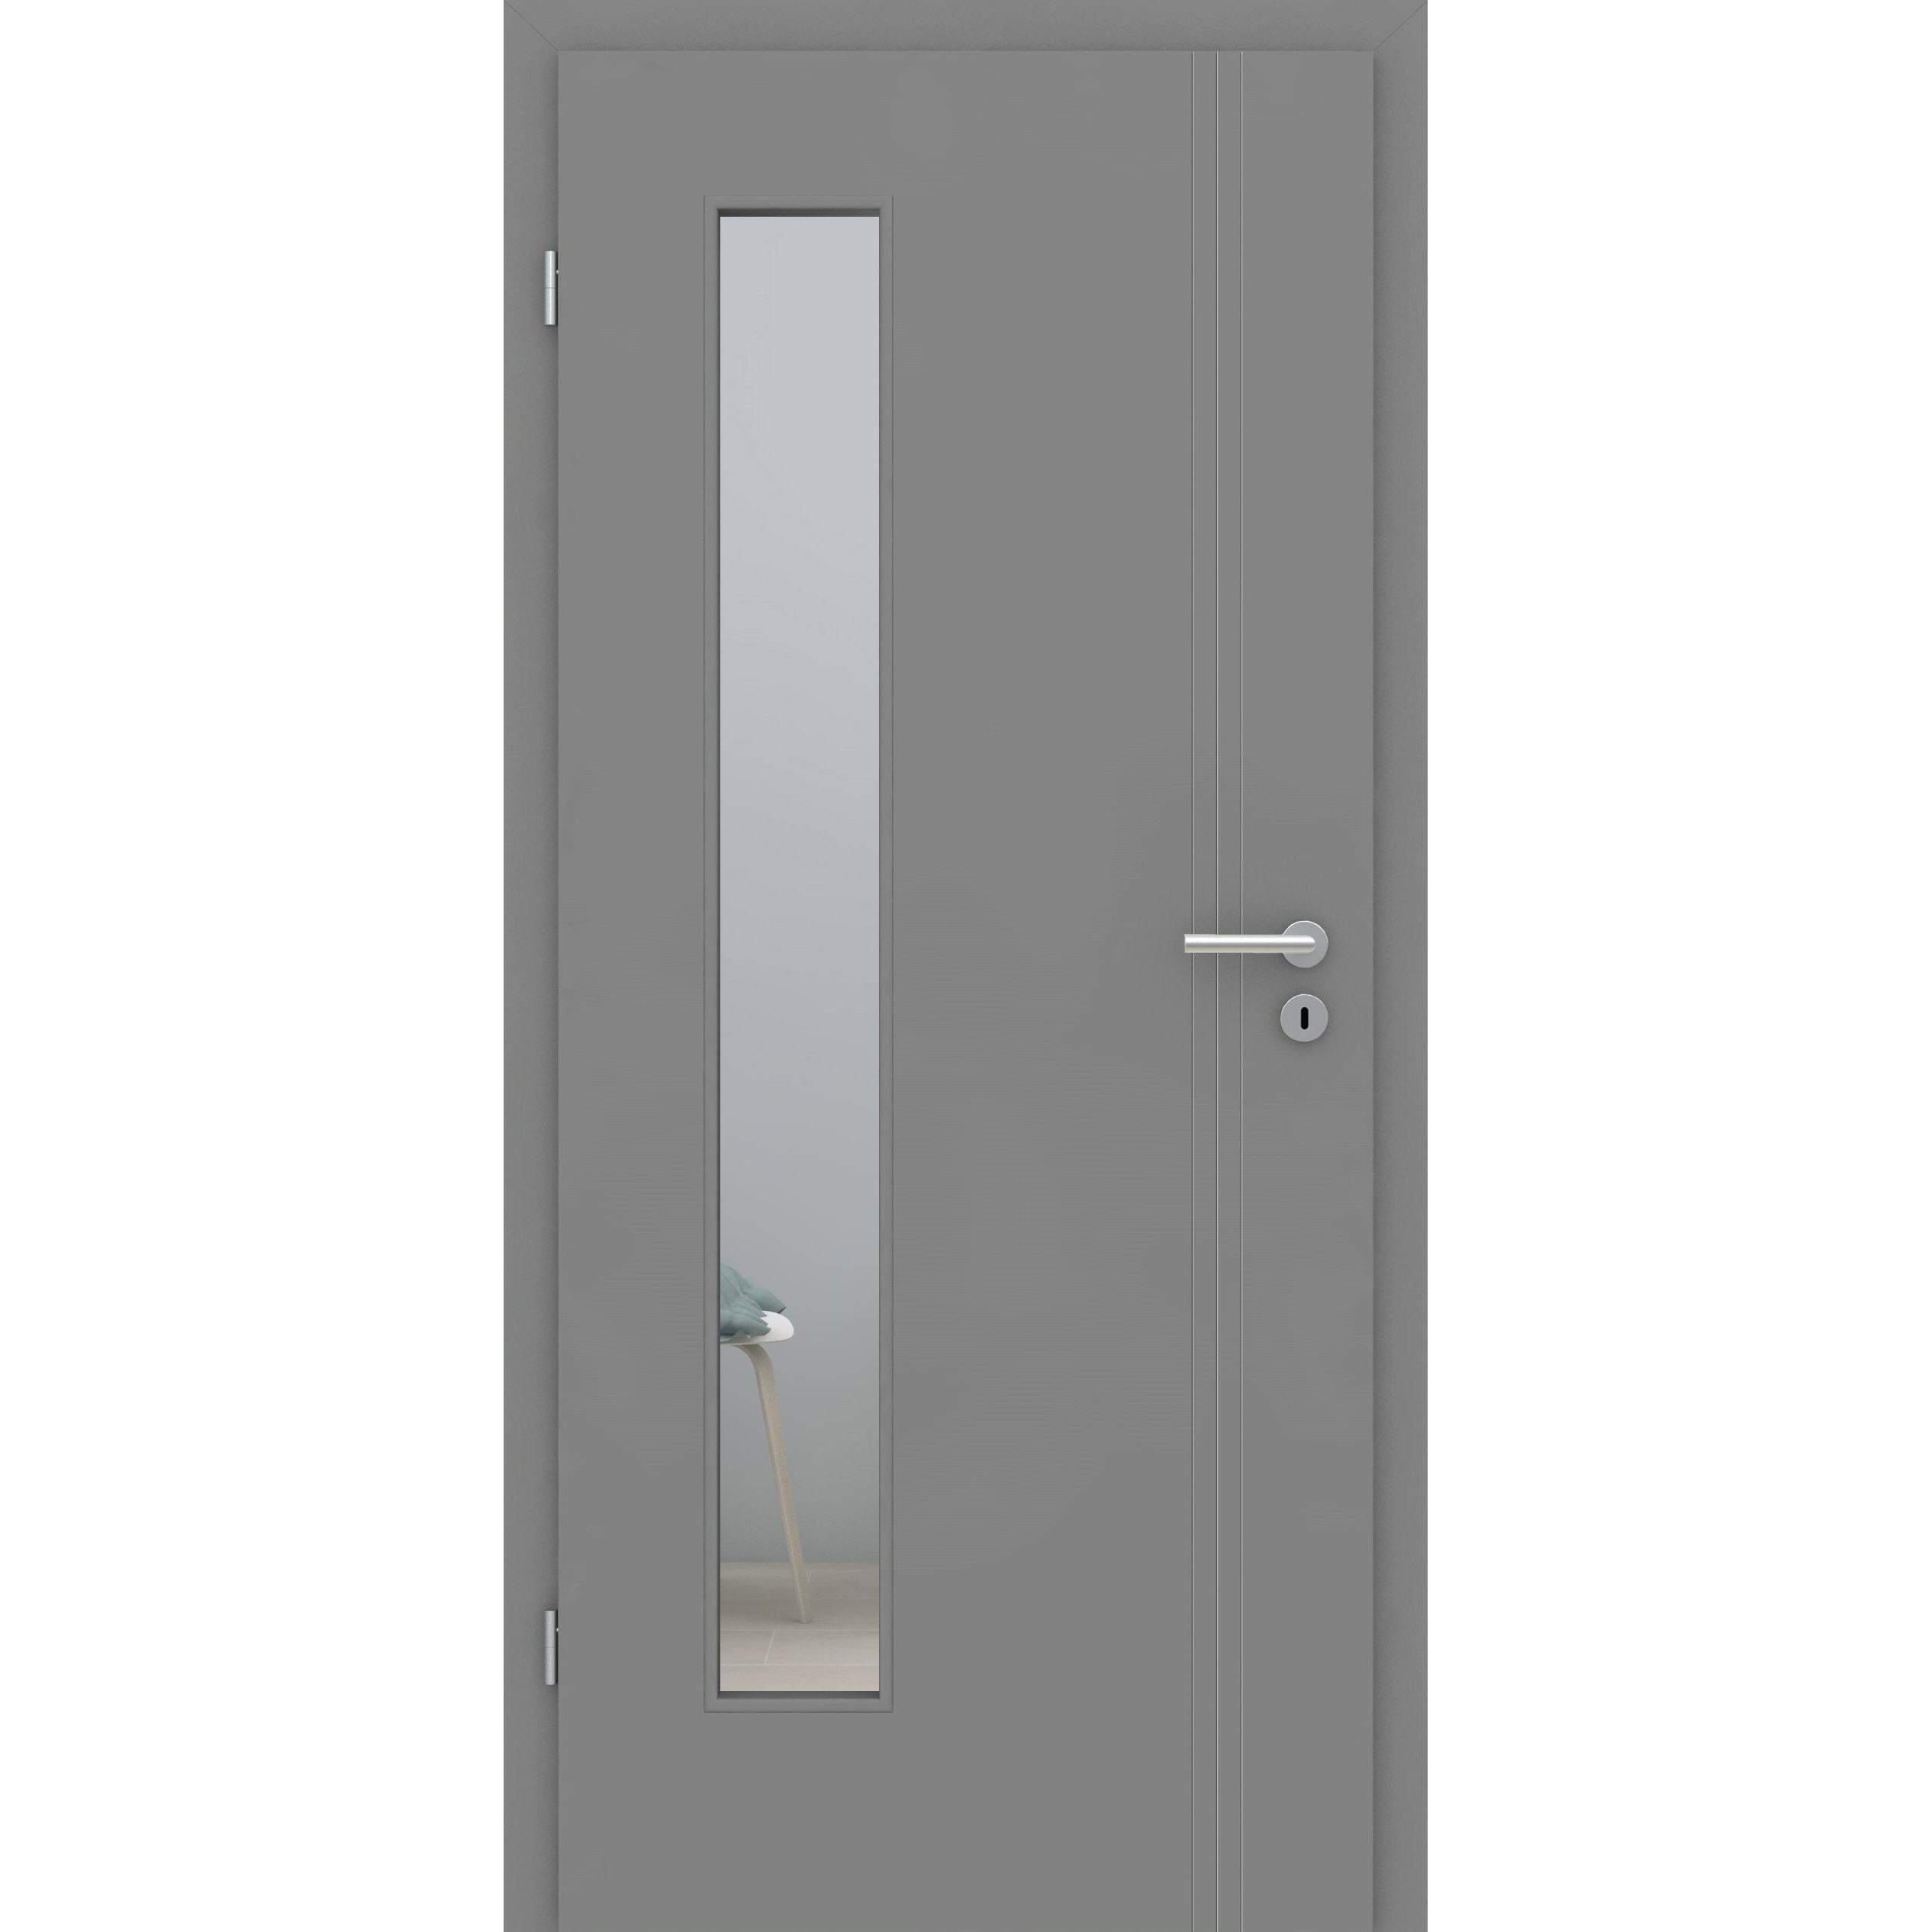 Zimmertür mit Zarge und Lichtausschnitt grau 3 Rillen aufrecht Schlosseite Designkante - Modell Designtür VS37LAB